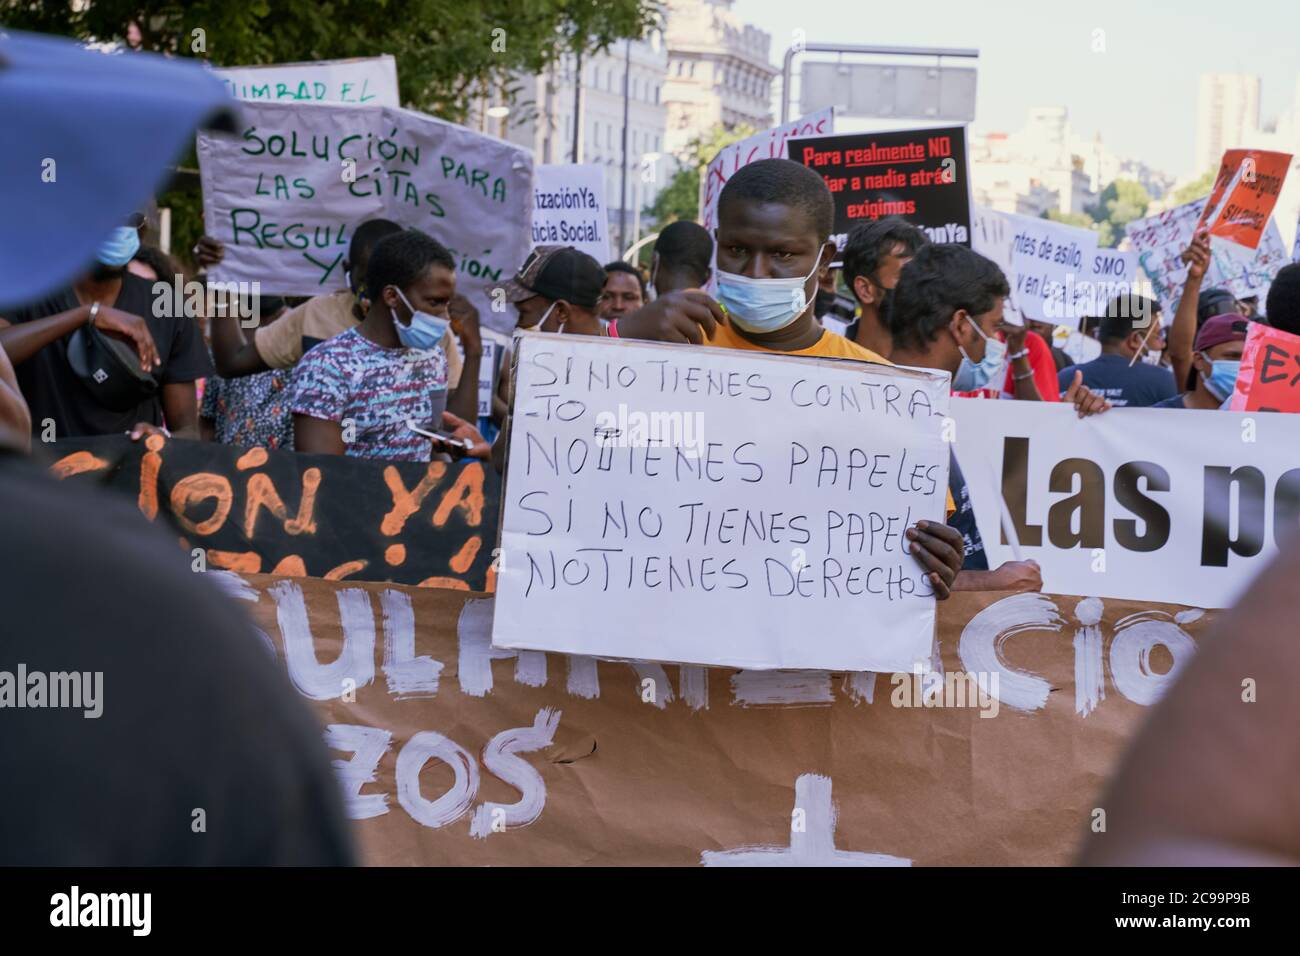 "Si vous n'avez pas de contrat, vous ne pouvez pas obtenir de papiers, si vous n'avez pas de papiers vous n'avez pas de droits" Placerard Papers pour tout le monde proteste Madrid juillet 2020 Banque D'Images